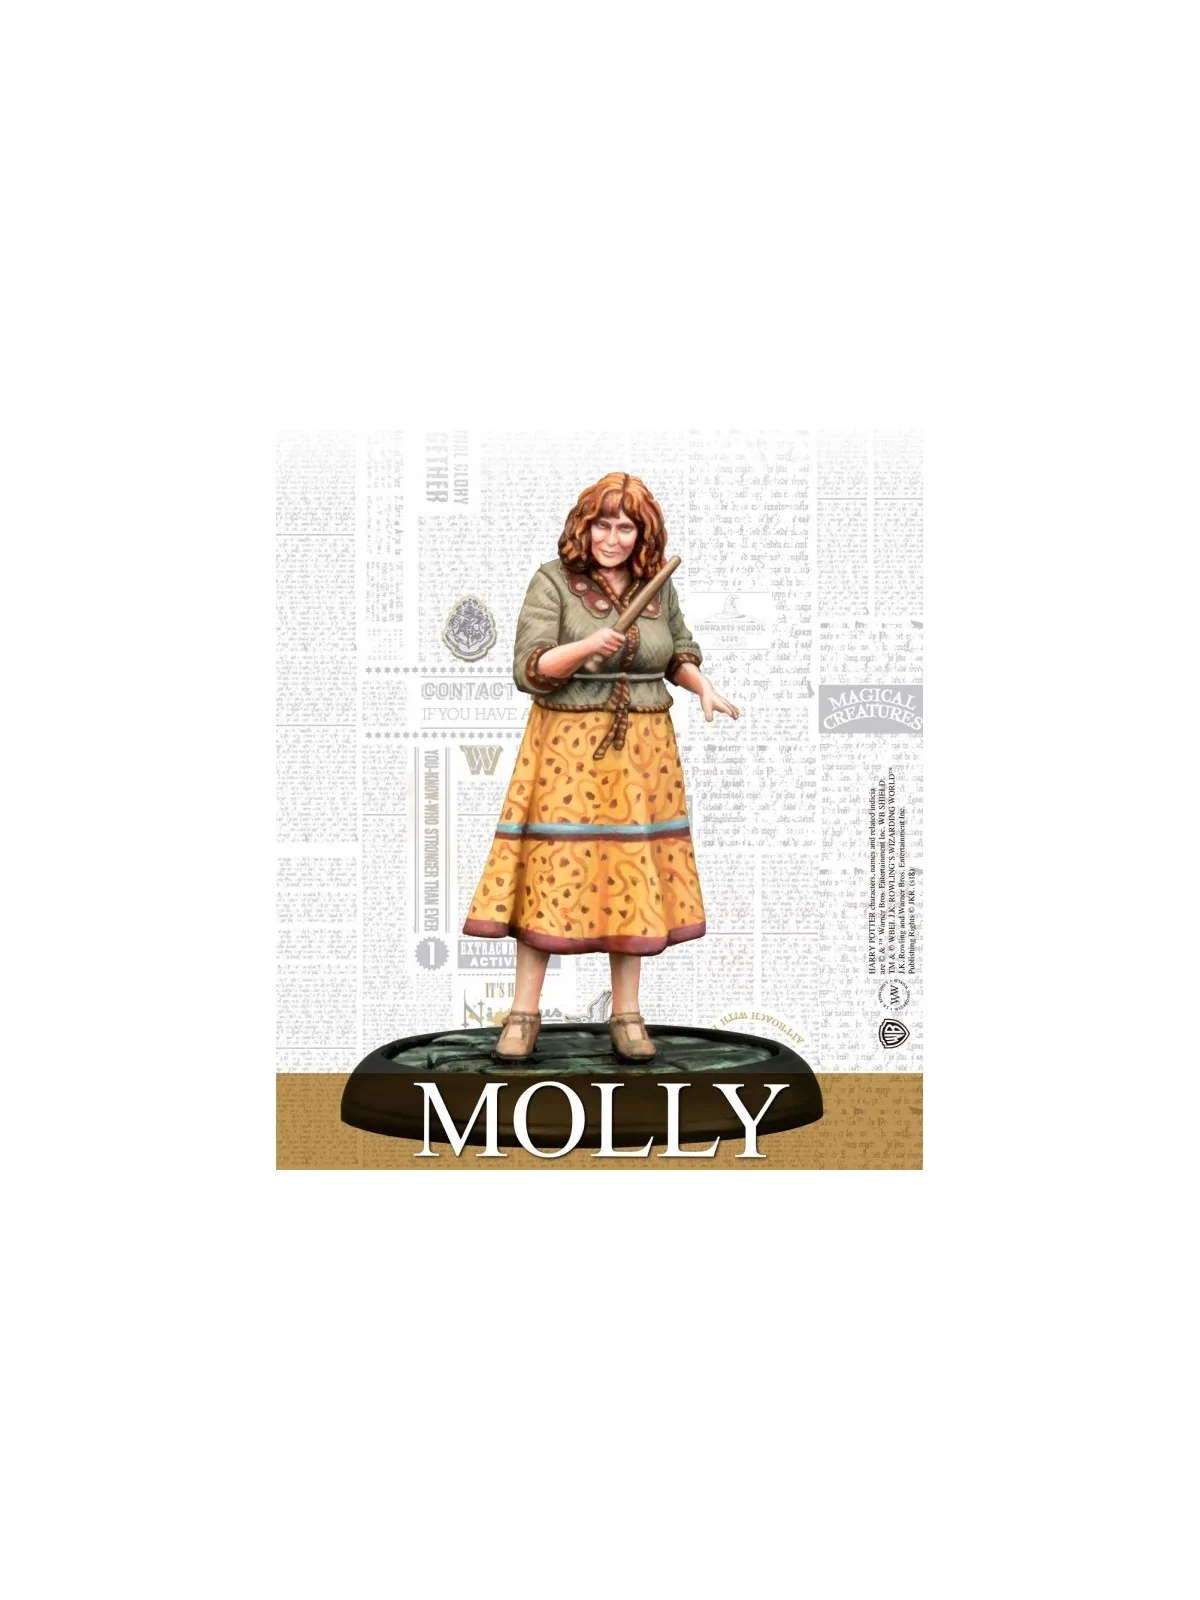 Comprar Harry Potter Miniatures Adventure Game: Molly & Arthur barato 